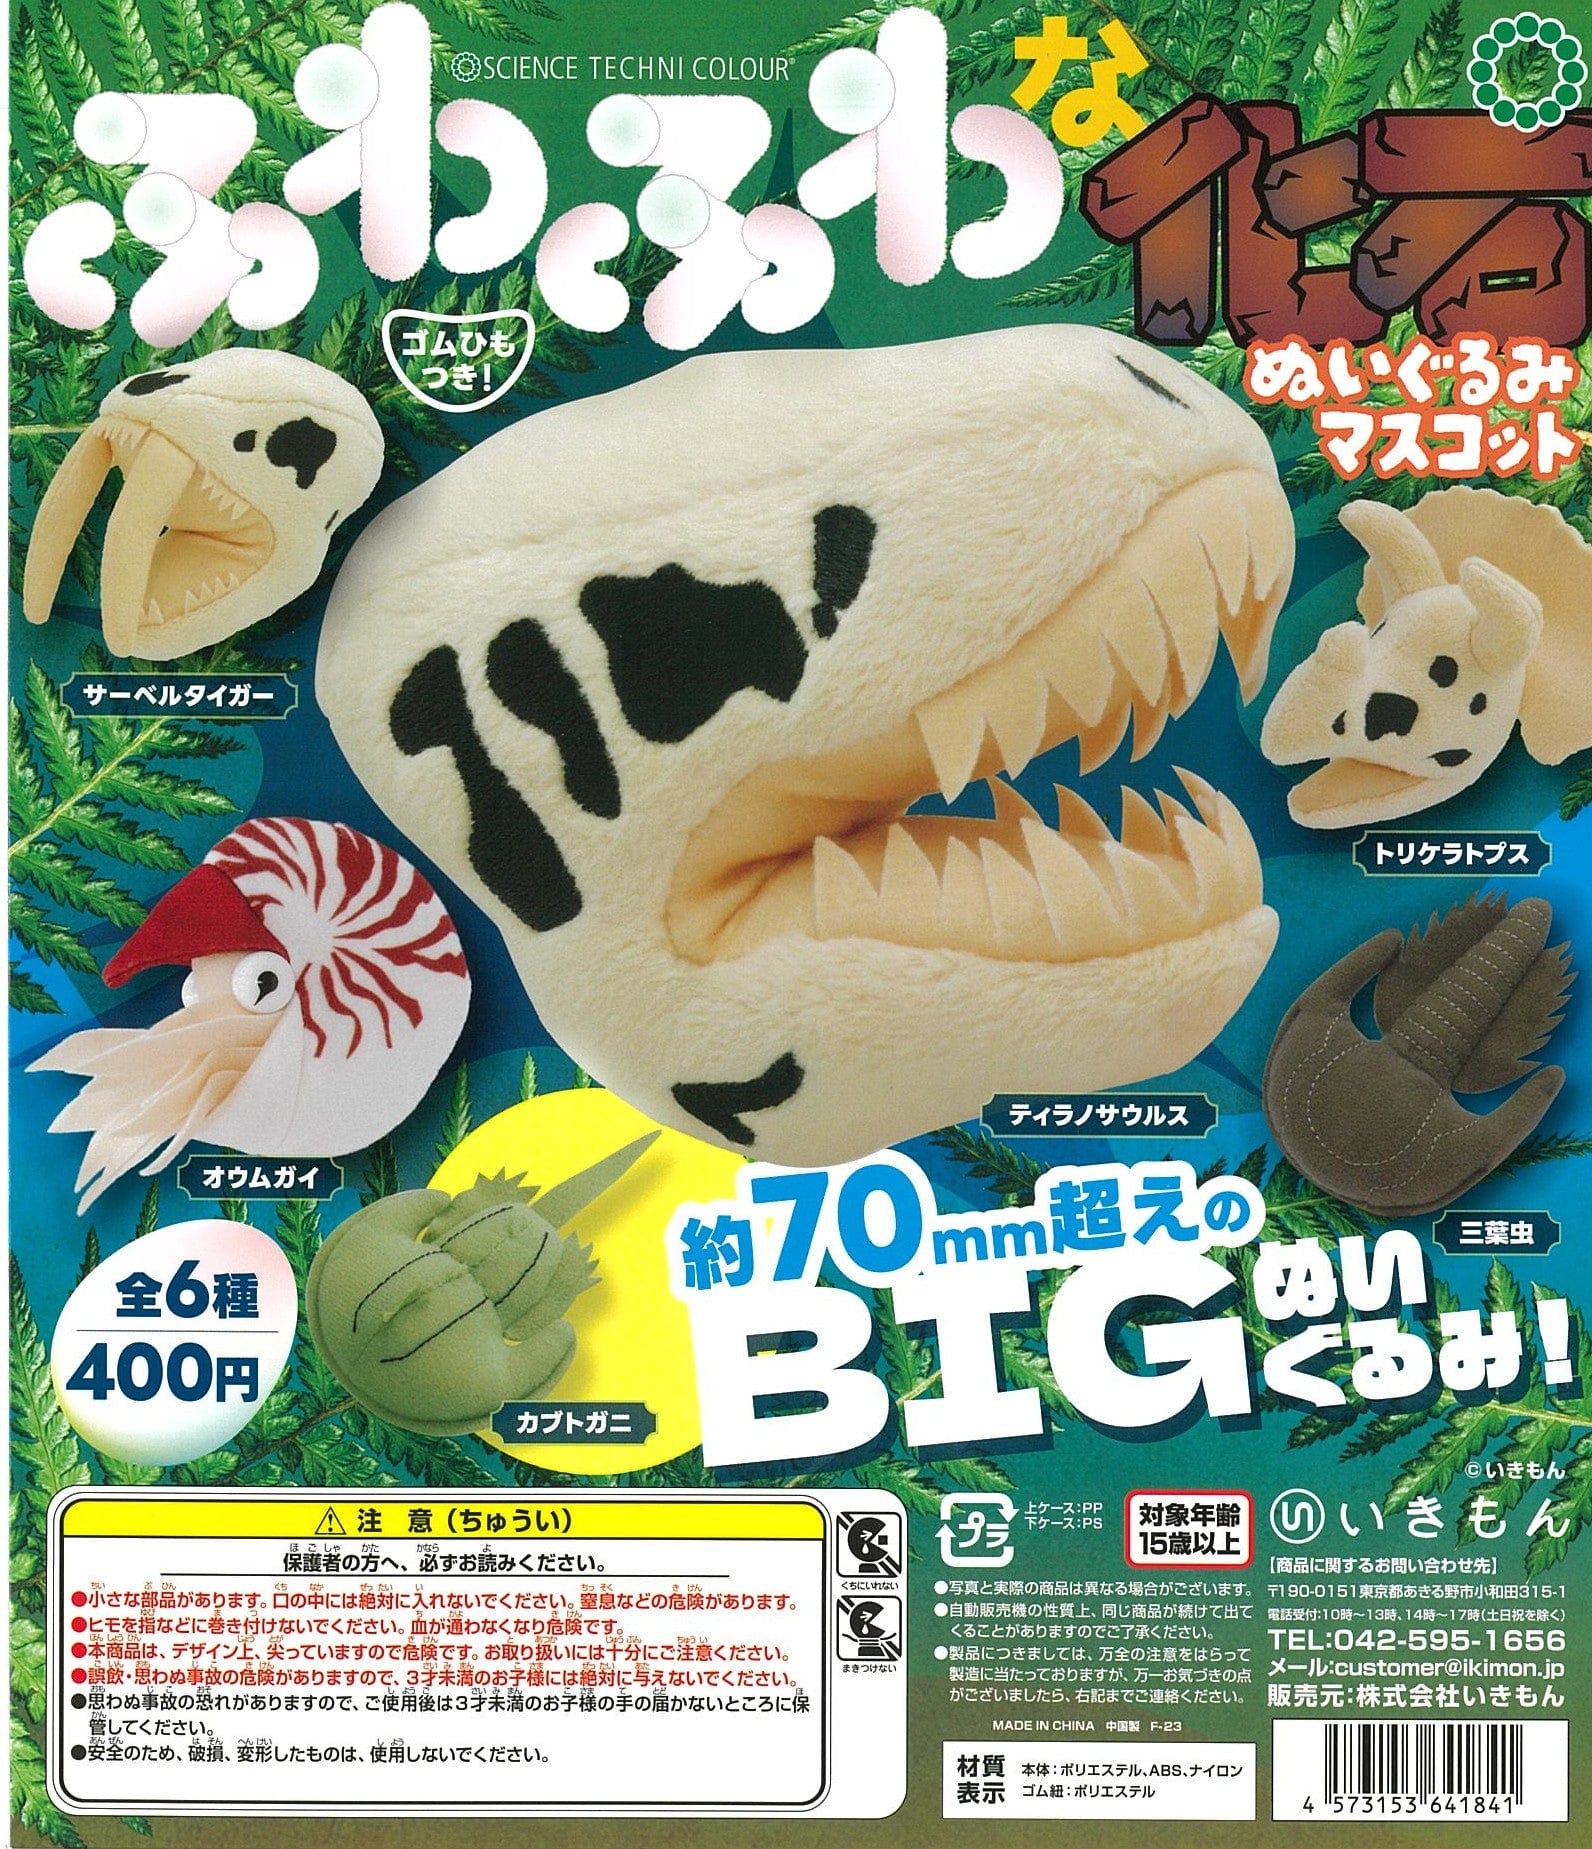 Ikimon CP2373 Science Techni Colour Fuwafuwa na Fossil Plush Mascot